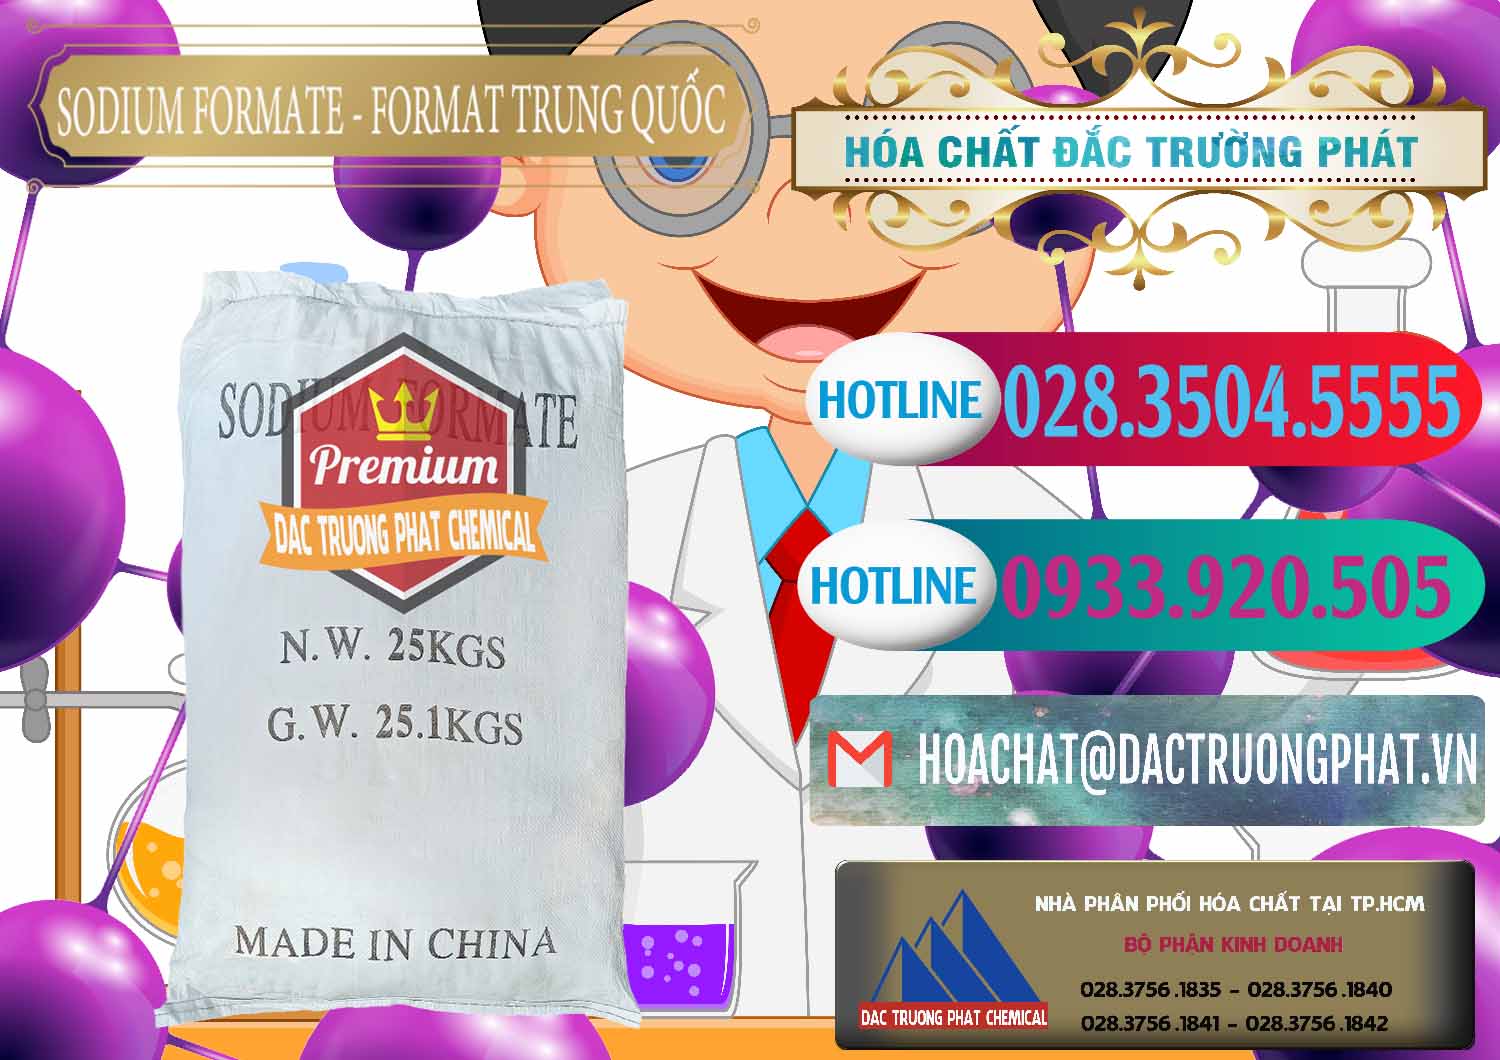 Cty phân phối _ bán Sodium Formate - Natri Format Trung Quốc China - 0142 - Nhà cung cấp ( phân phối ) hóa chất tại TP.HCM - truongphat.vn